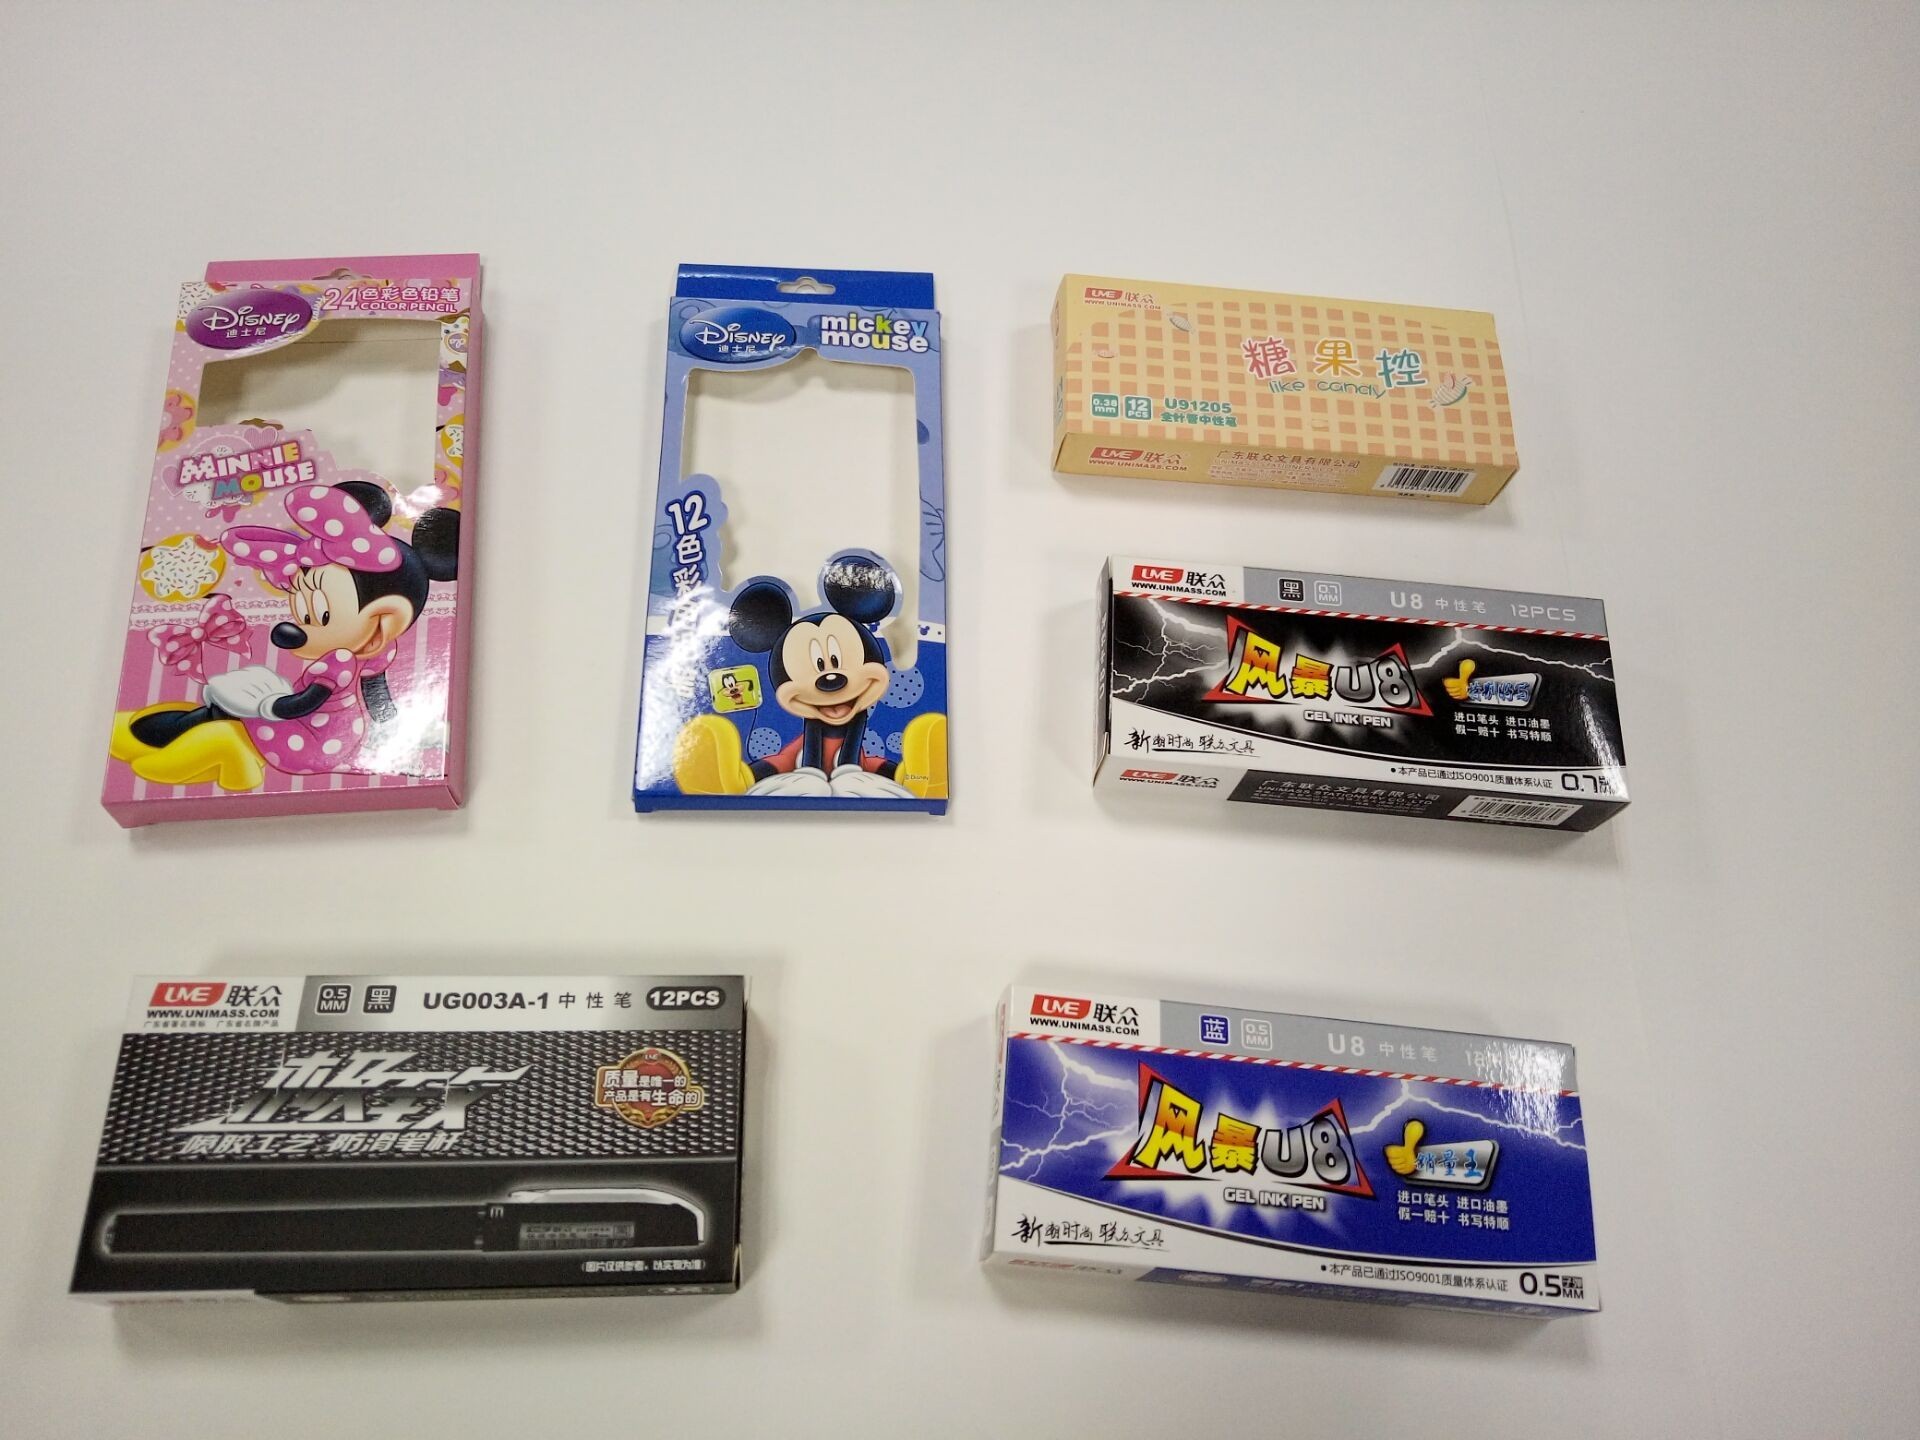 Pen Case - Cartridge Packaging